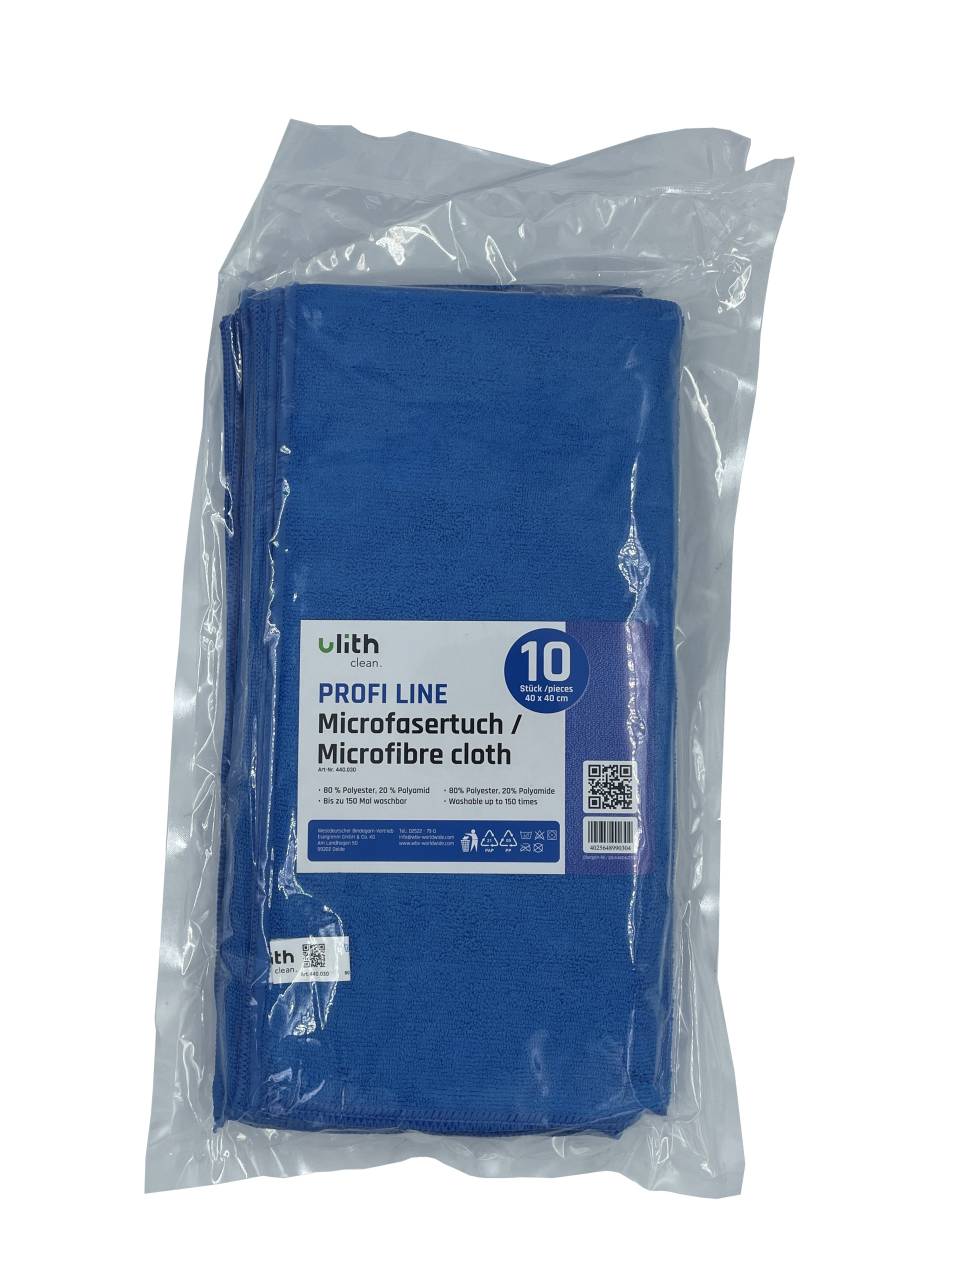 Clean-Profi-Microfasertuch blau 10er Pack